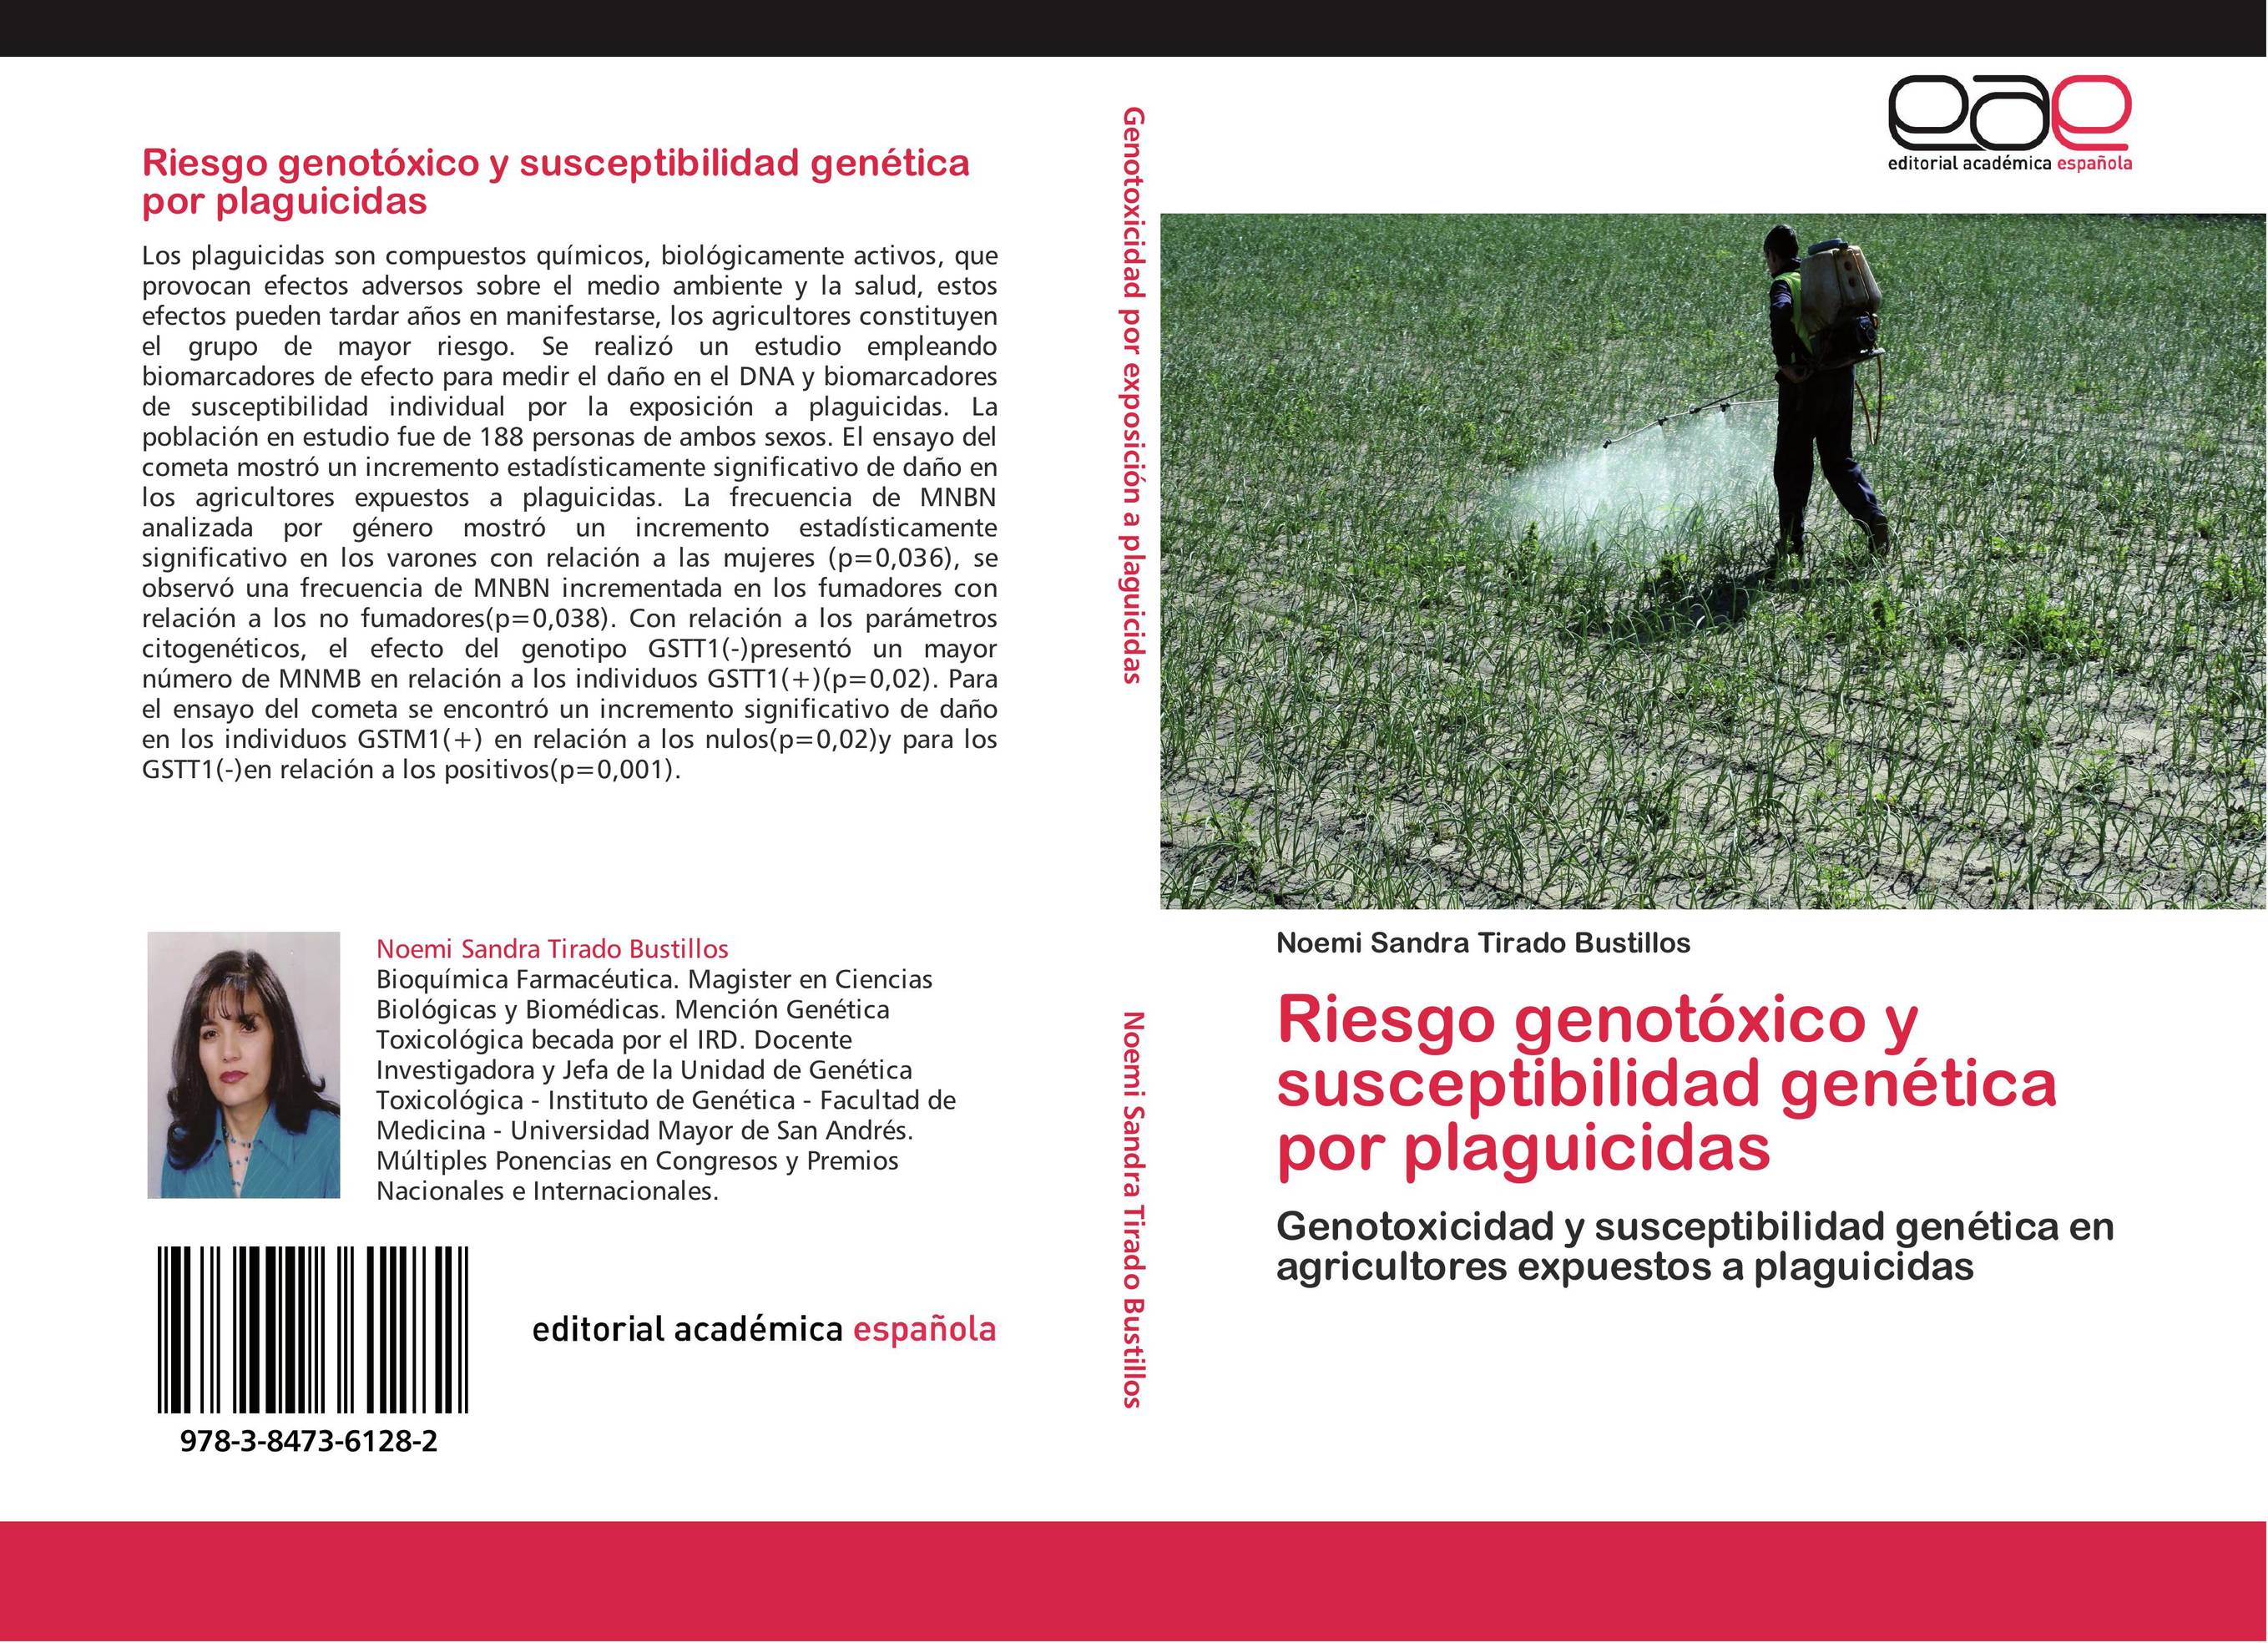 Riesgo genotóxico y susceptibilidad genética por plaguicidas